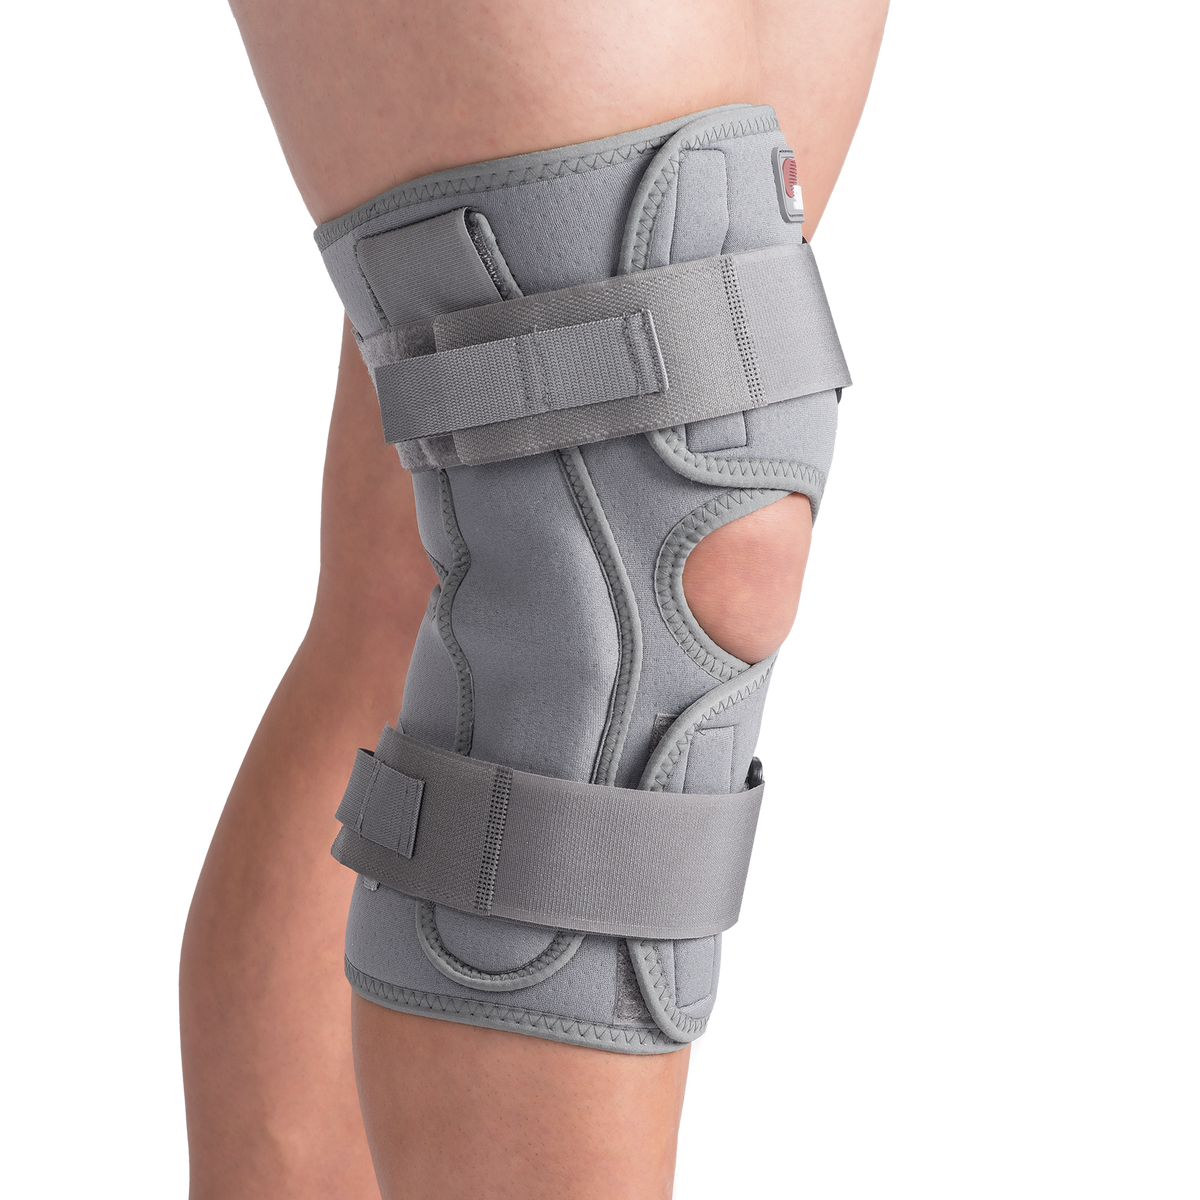 Form Fit ROM Wrap Long Open Popliteal Knee Brace Size: XX-Large